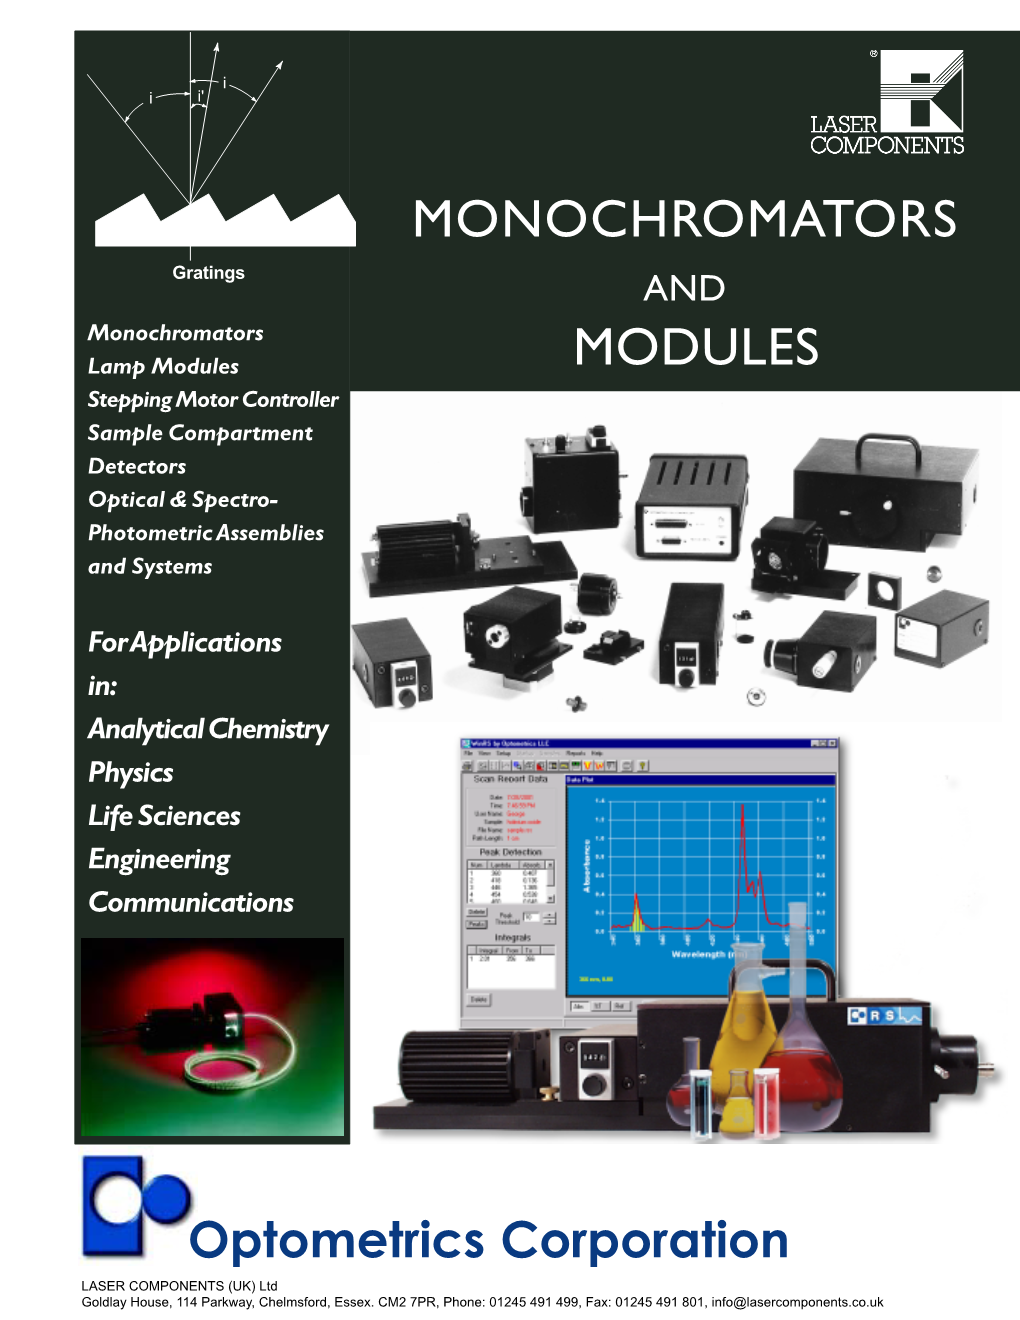 Monochromators and Modules